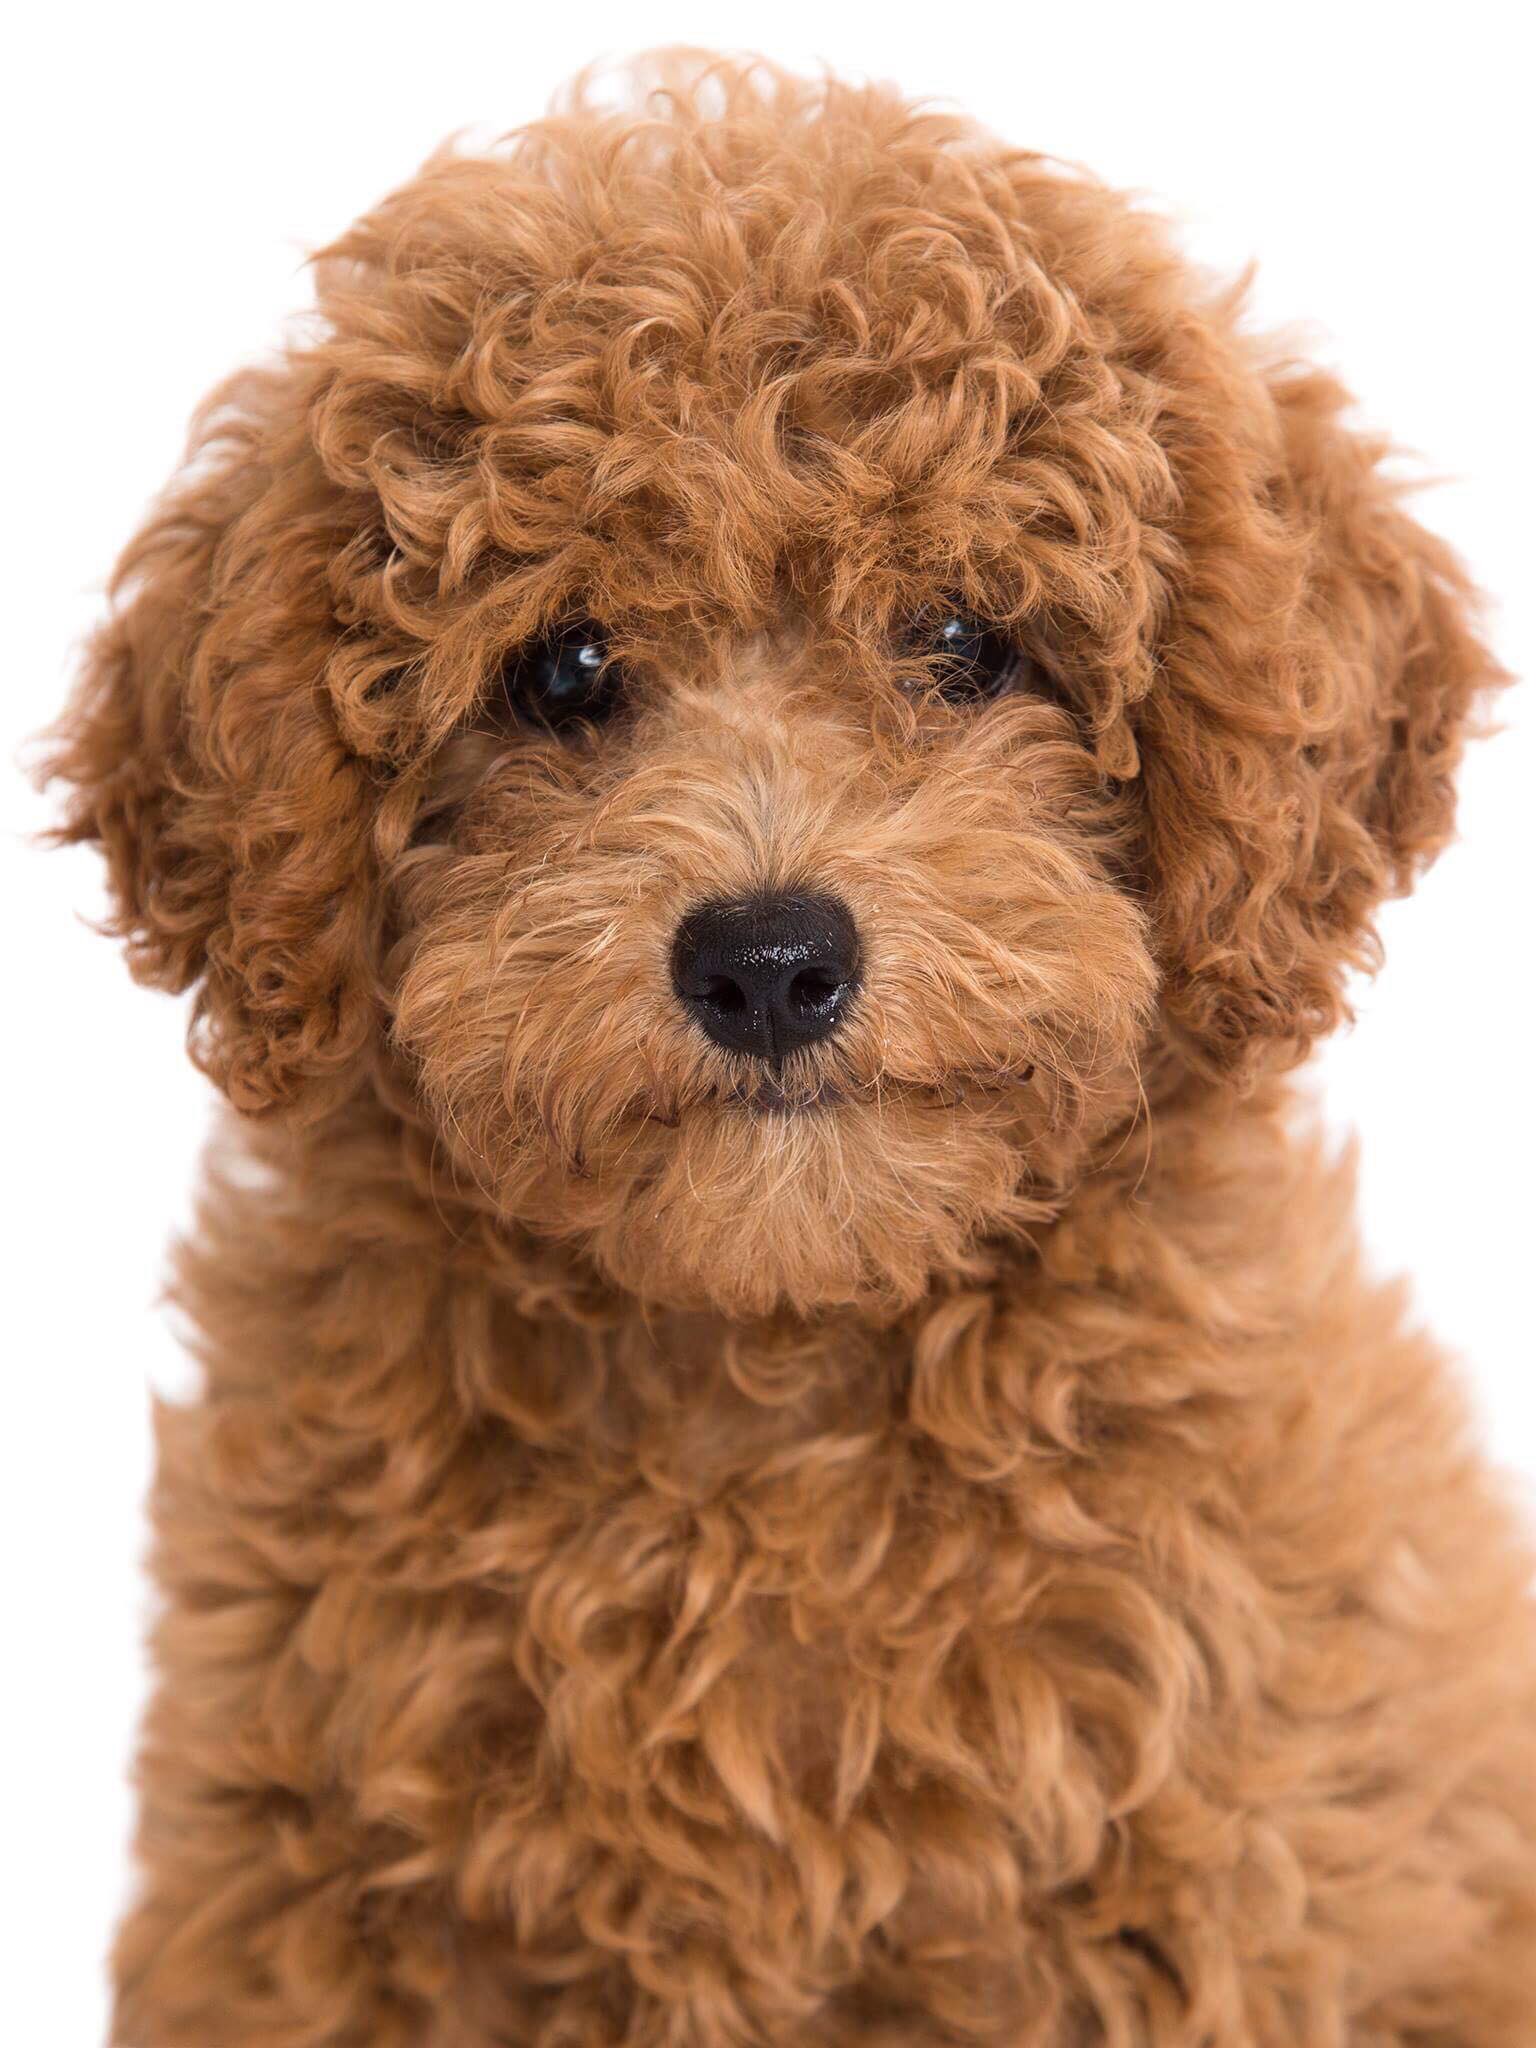 Chụp ảnh chó Poodle: Bạn muốn tạo những bức ảnh đẹp với chú chó Poodle của mình? Hãy xem các tư thế chụp ảnh đáng yêu của chó Poodle mà chúng tôi cung cấp. Bạn sẽ có được những bức ảnh độc đáo và đẹp nhất với chú chó yêu thích của mình.